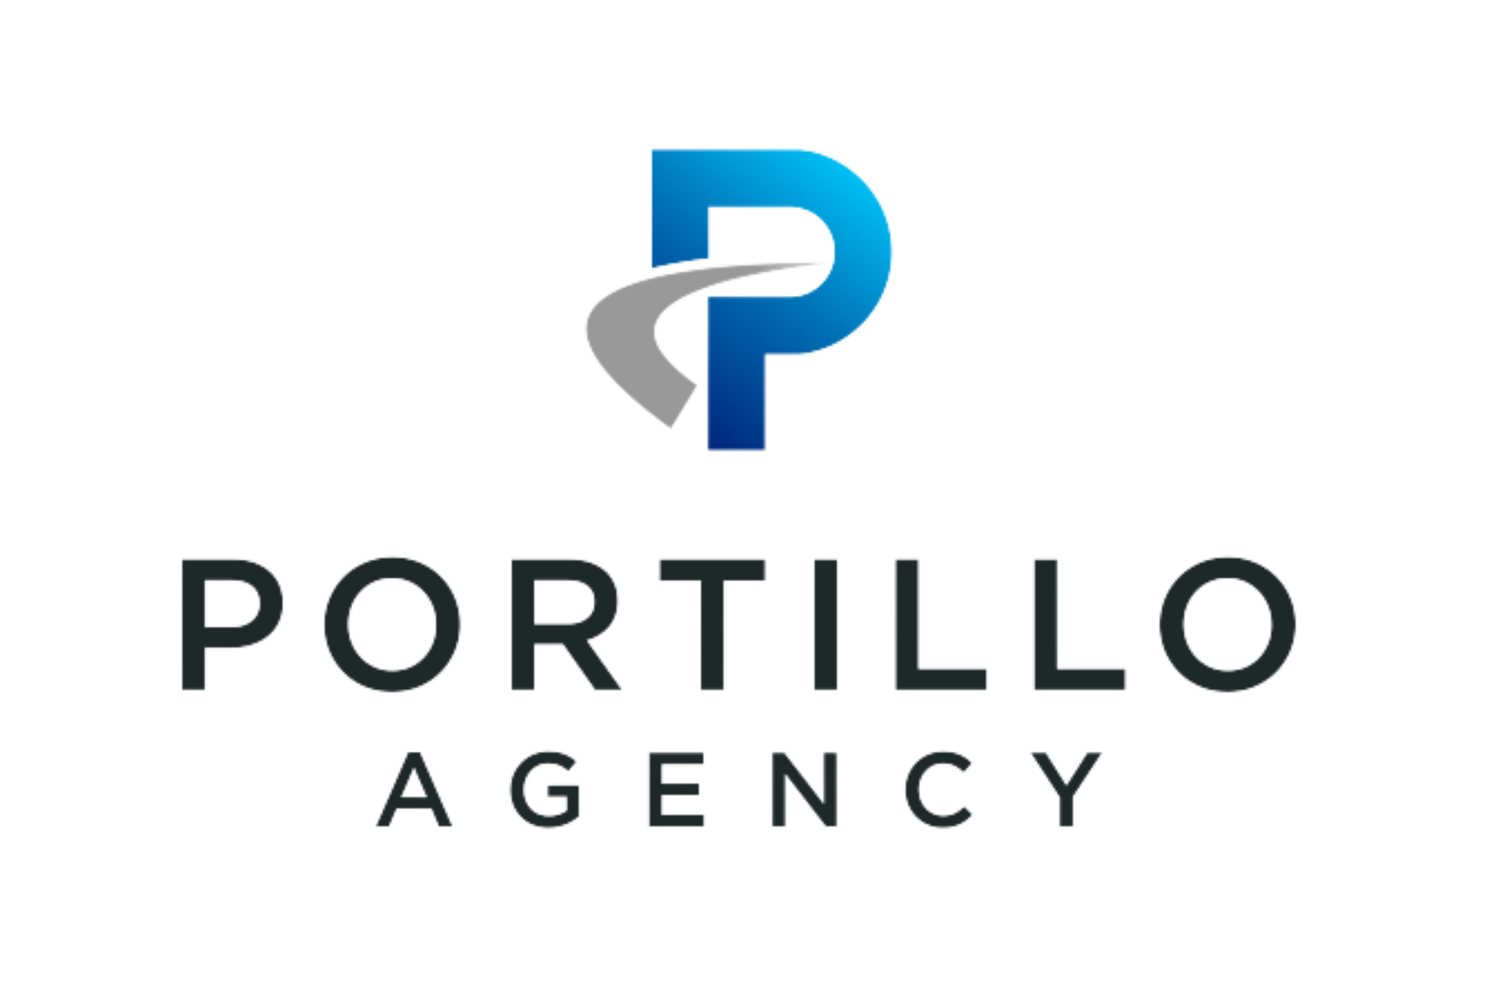 Portillo Agency